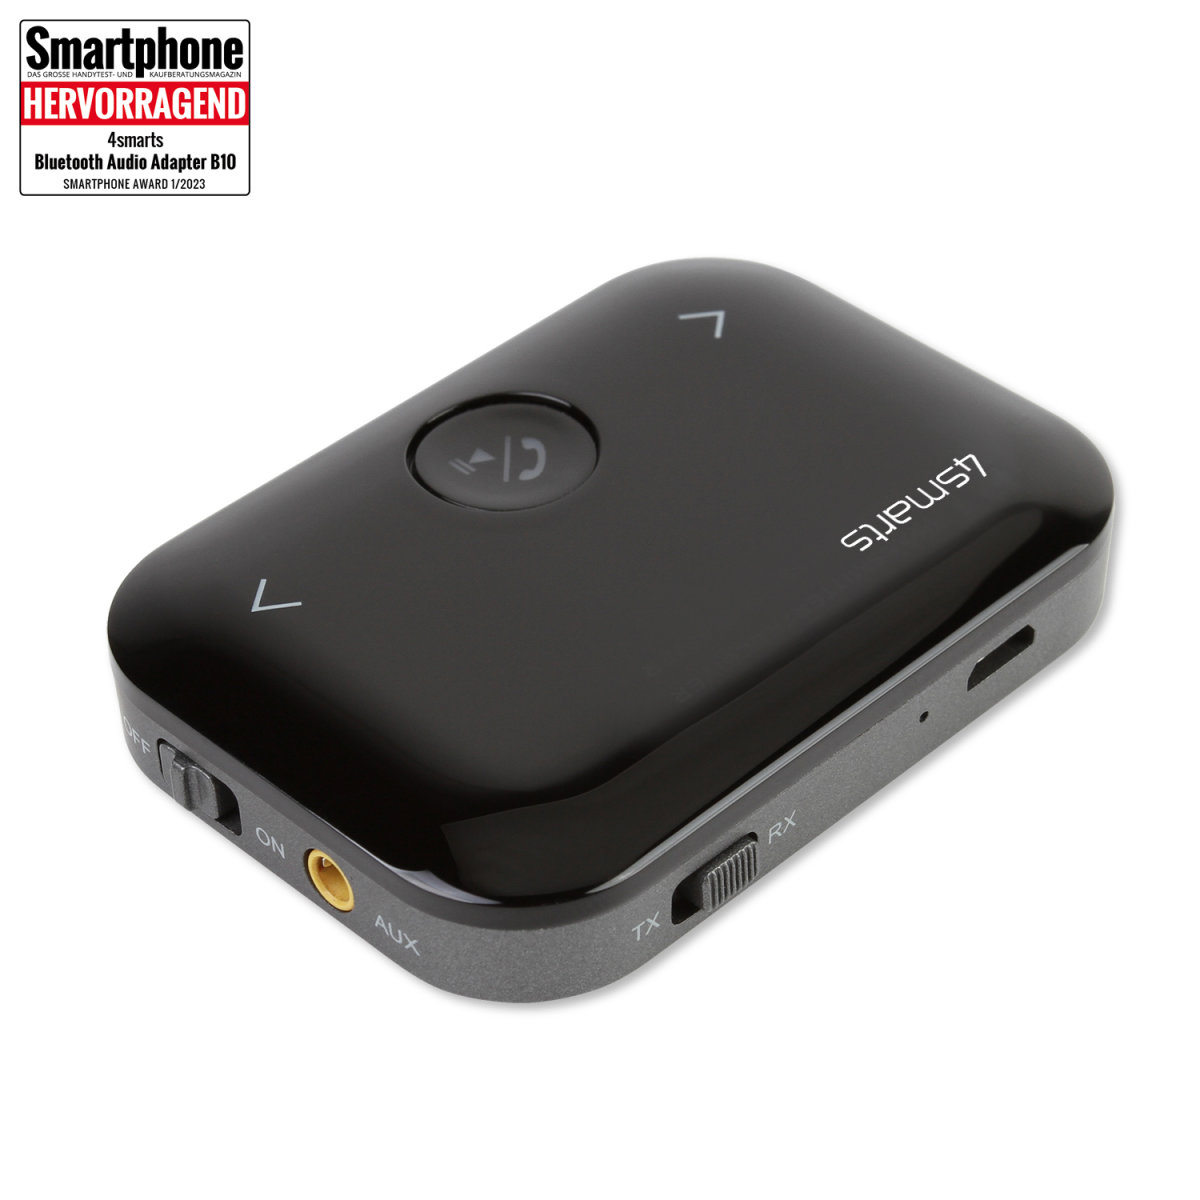 4smarts Bluetooth Audio Adapter B10, Sender und Empfänger